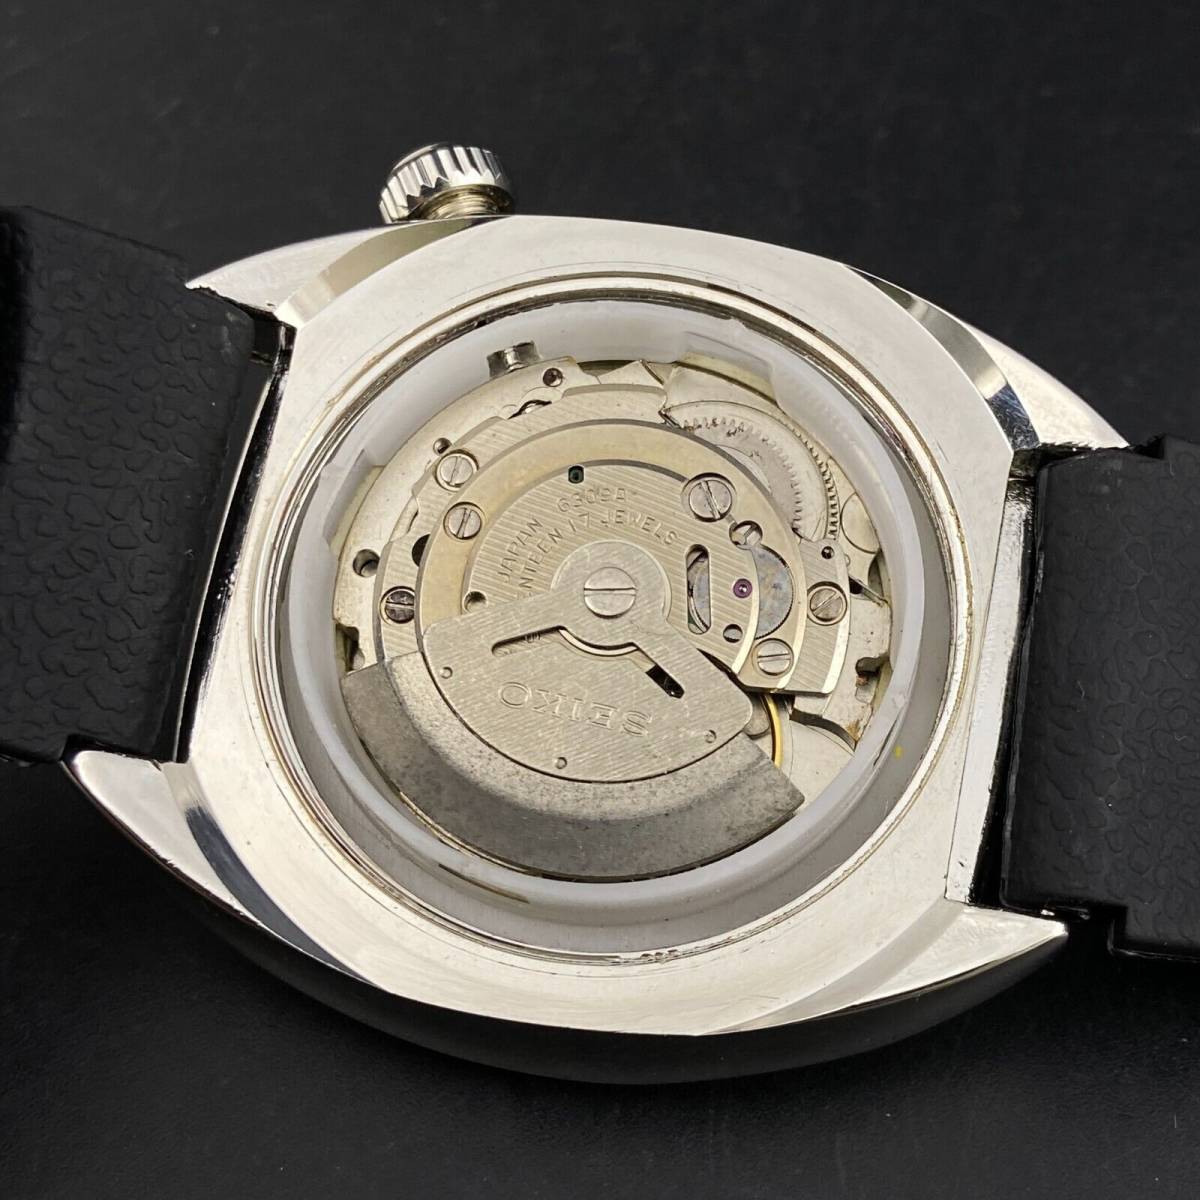 【訳あり】SEIKO 海外限定品 日本未発売 セイコー アンティーク ヴィンテージ ダイバー 腕時計 自動巻 グレー メンズ ウォッチ 送料無料